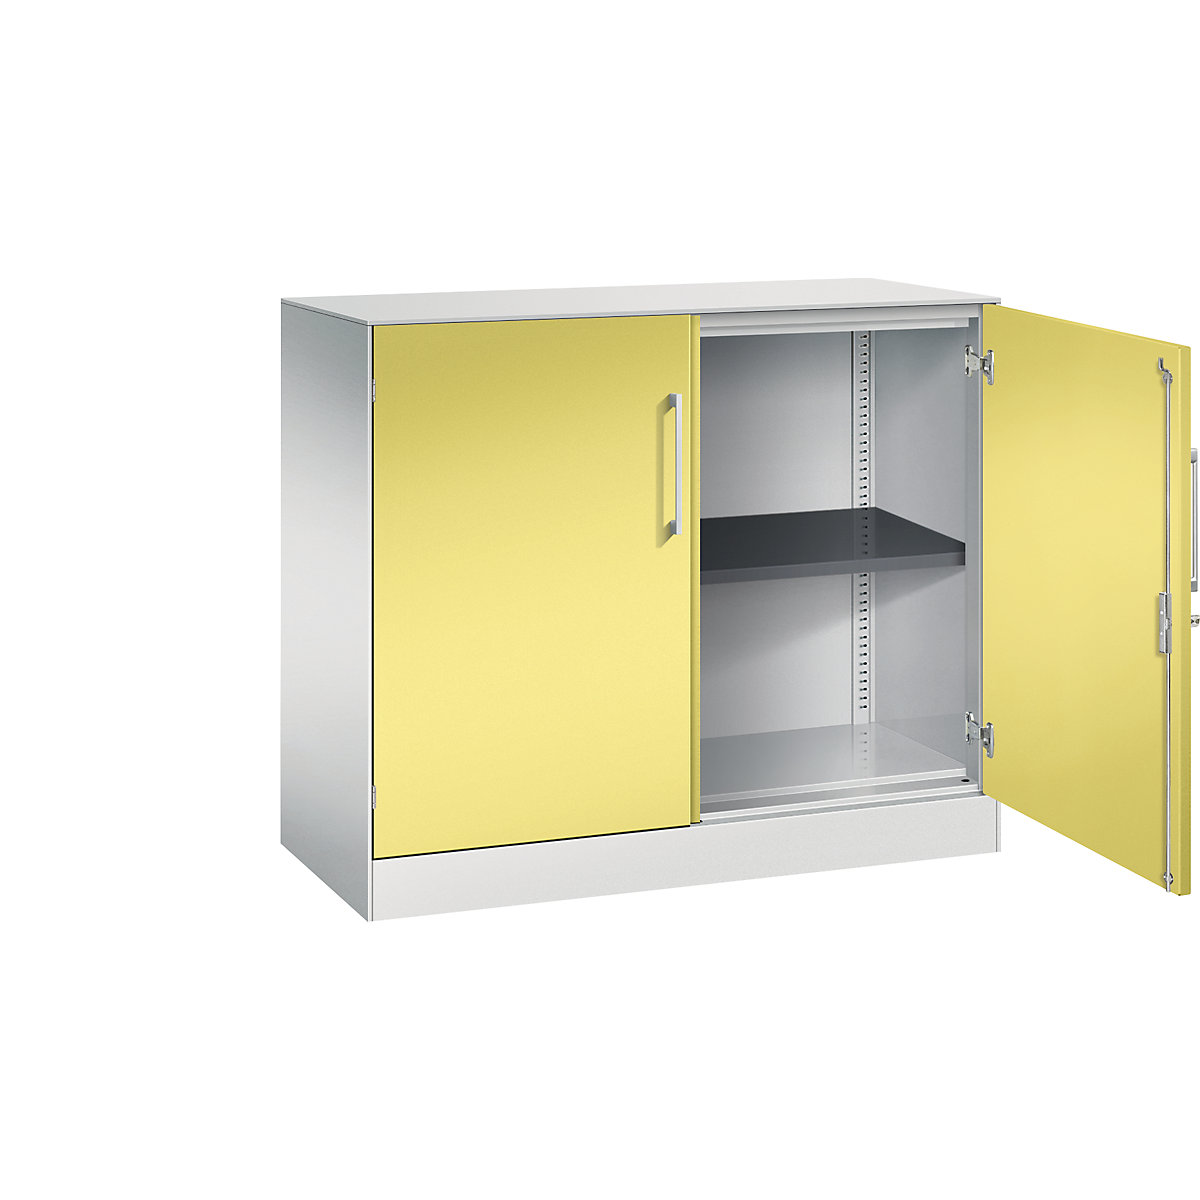 C+P – Skříň s otočnými dveřmi ASISTO, výška 897 mm, šířka 1000 mm, 1 police, světlá šedá/sírová žlutá